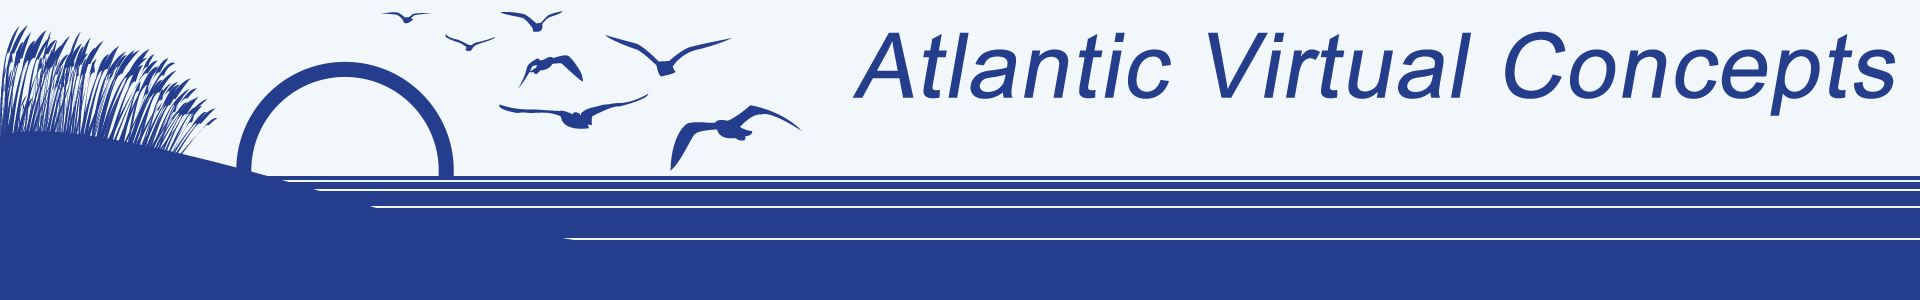 Atlantic Virtual Concepts, Inc.